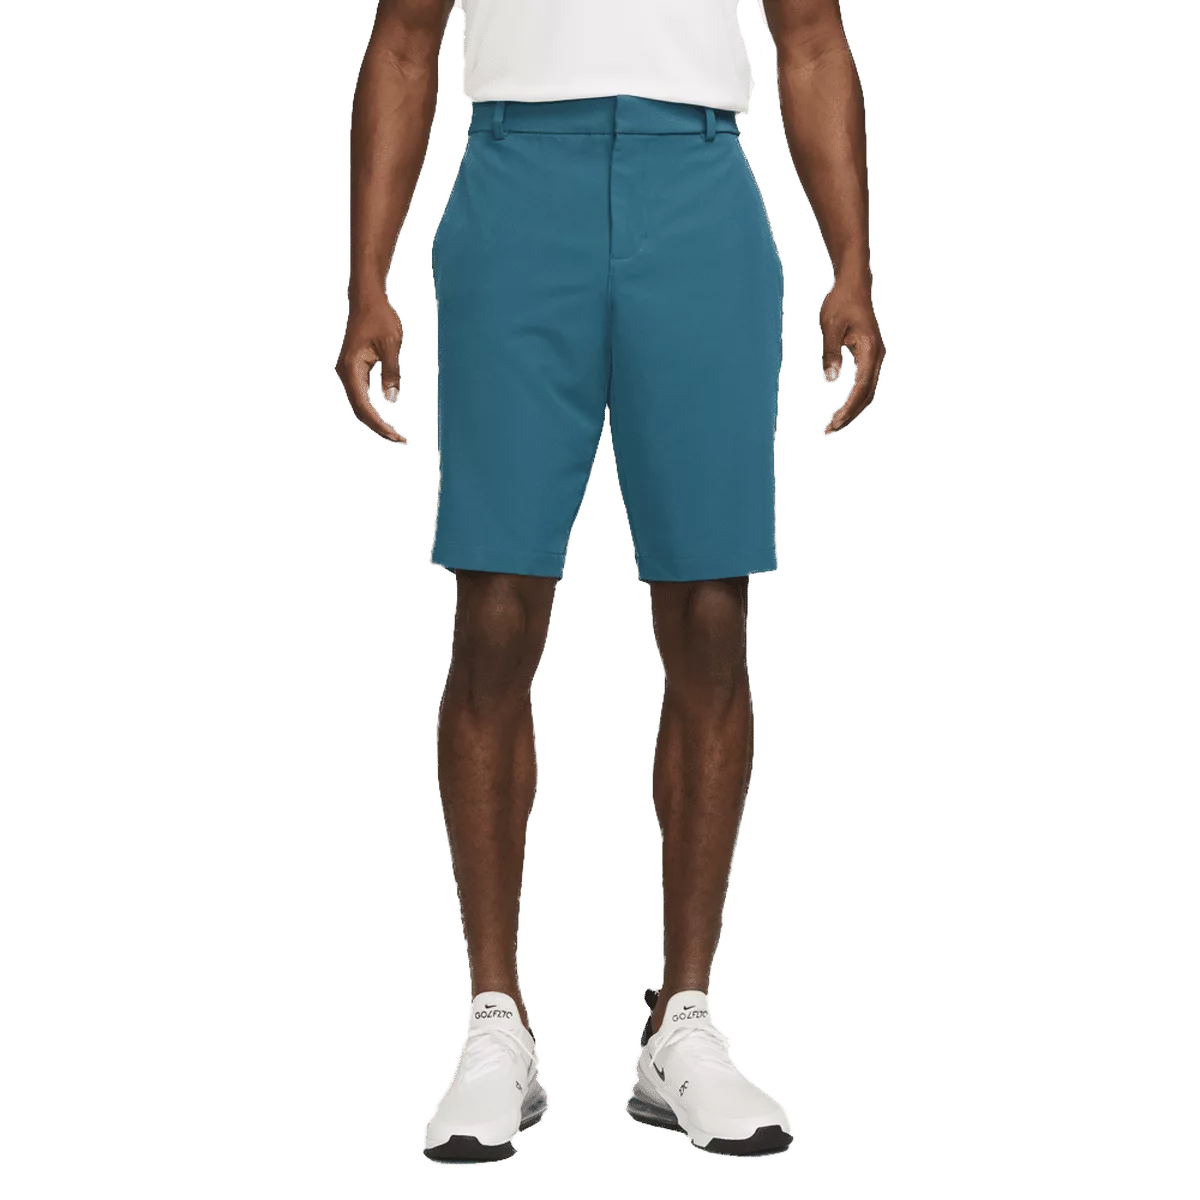 Nike Dri-Fit Golf Shorts